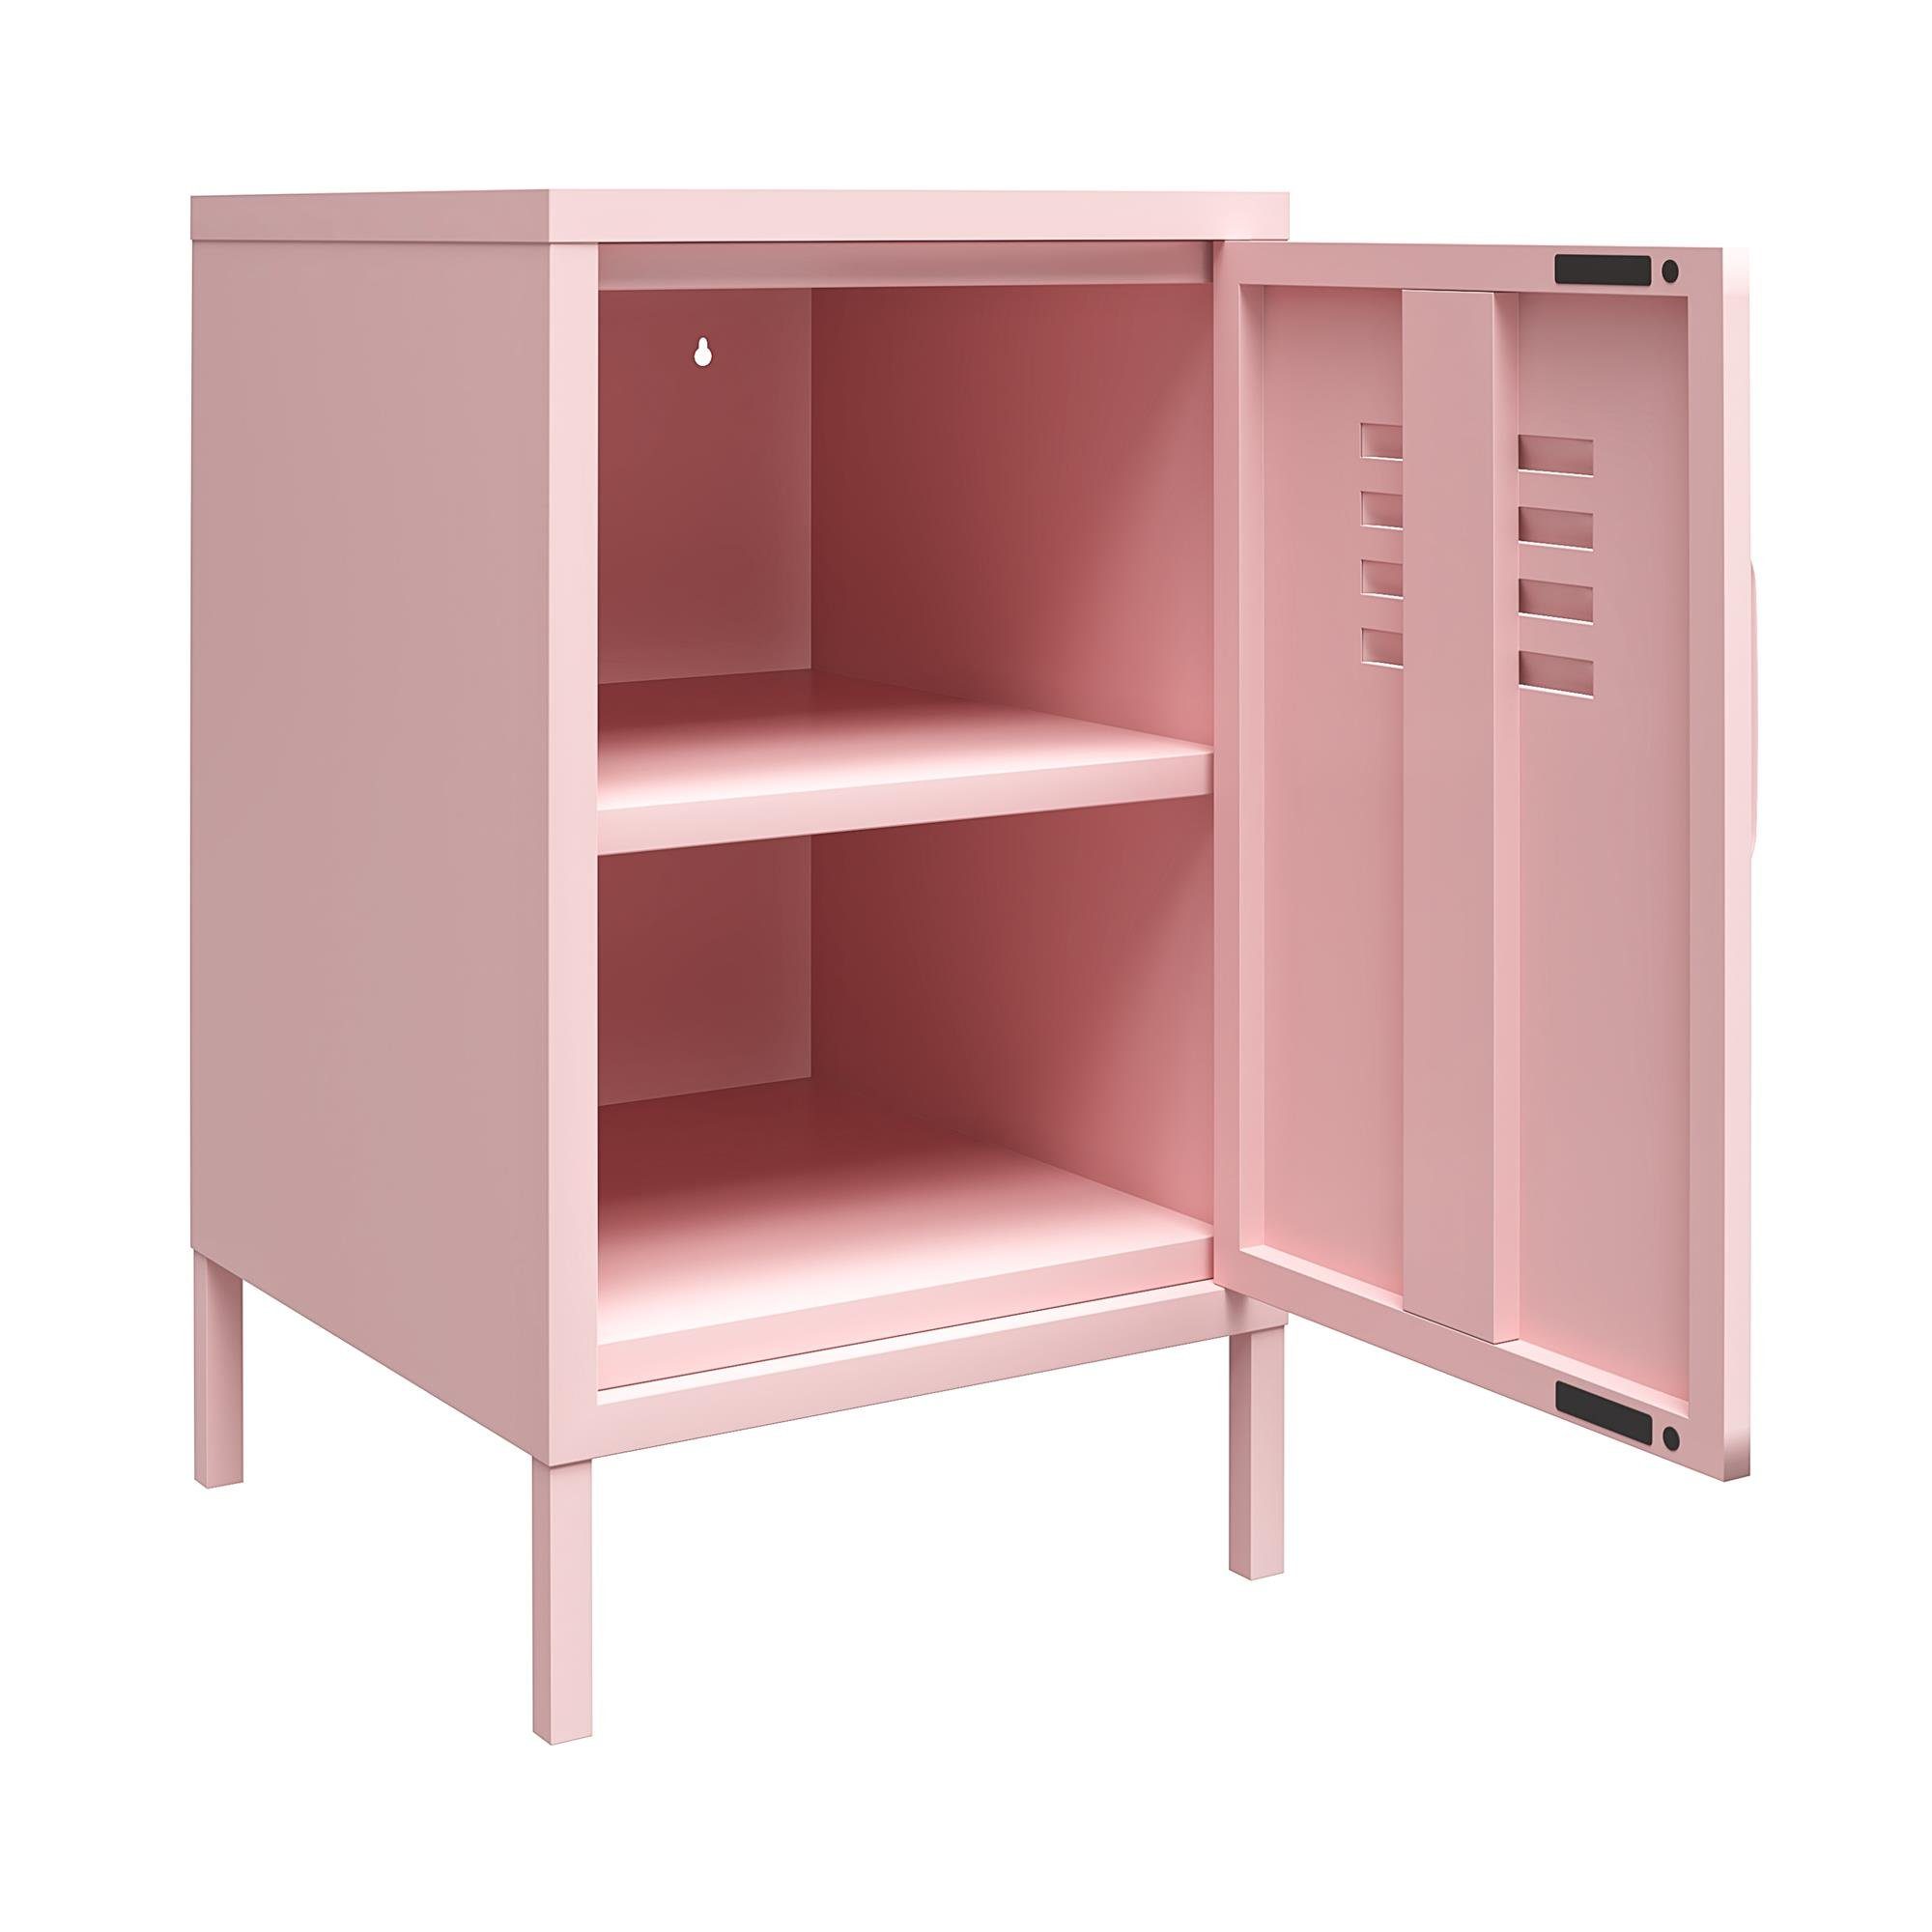 aus Retro-Design Metall im pink Nachtschrank loft24 abschließbar, Spint-Look, Cache